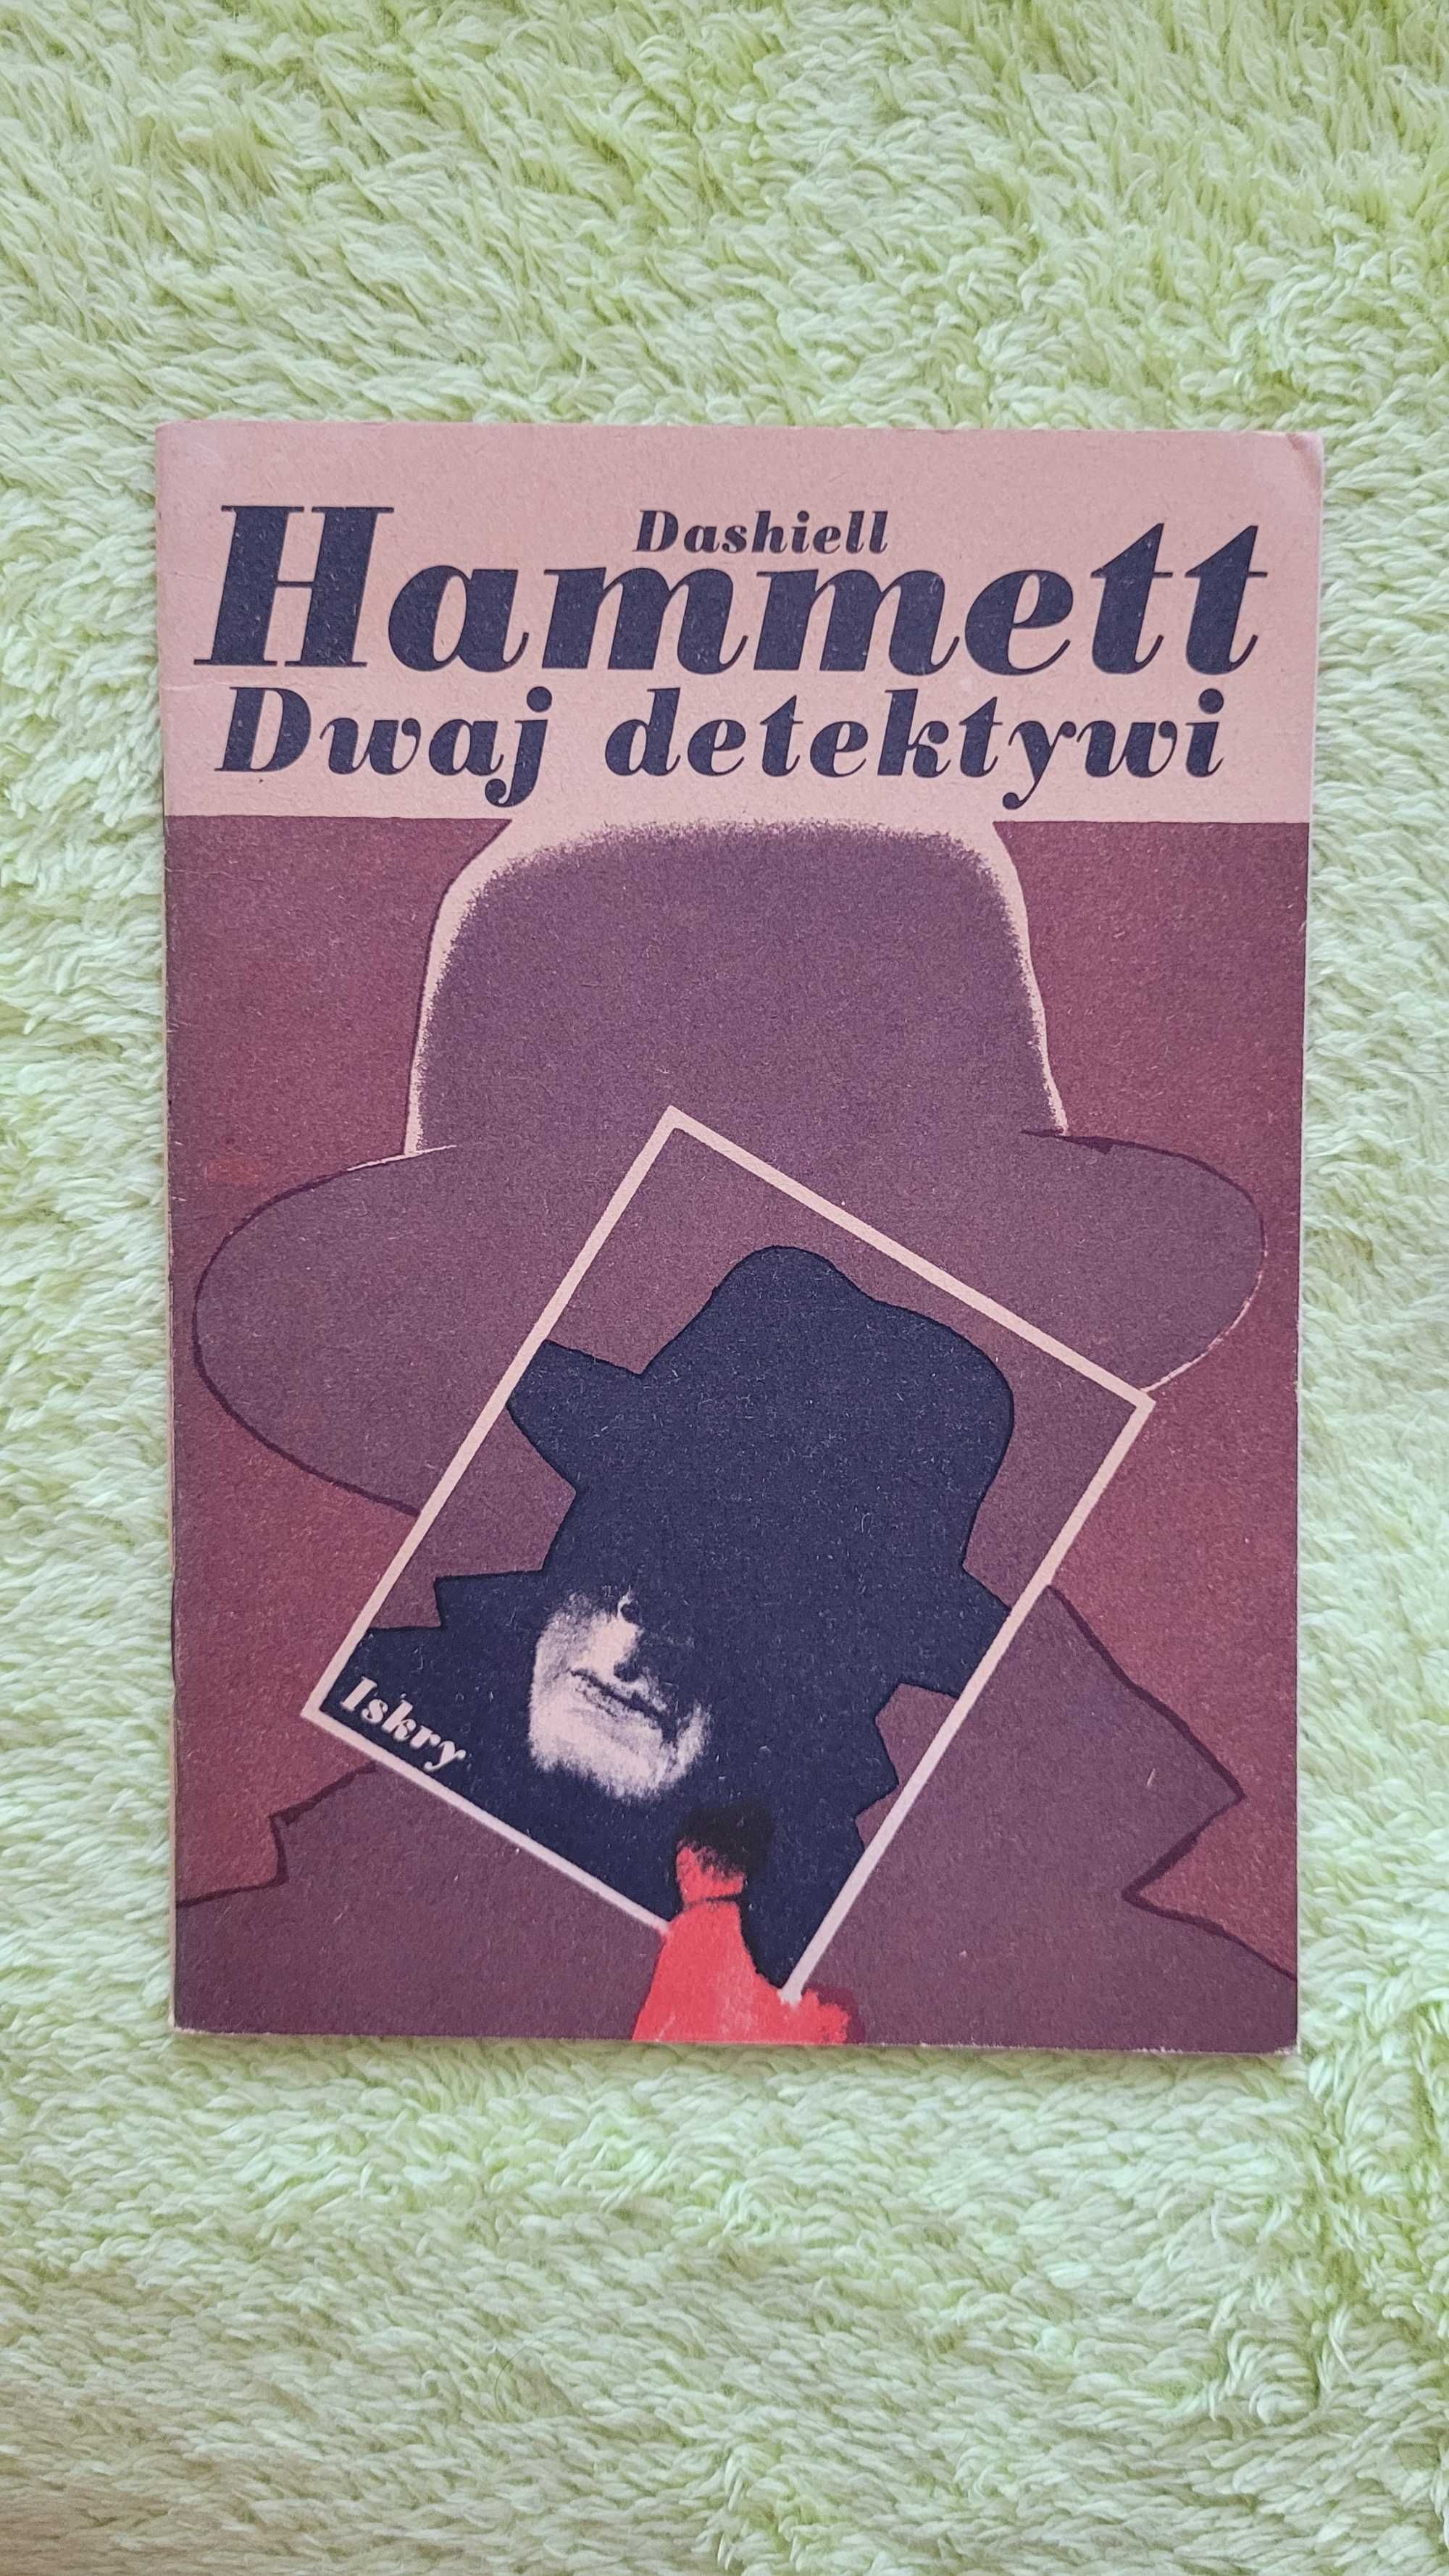 Książka: "Dwaj detektywi", Dashiell Hammett